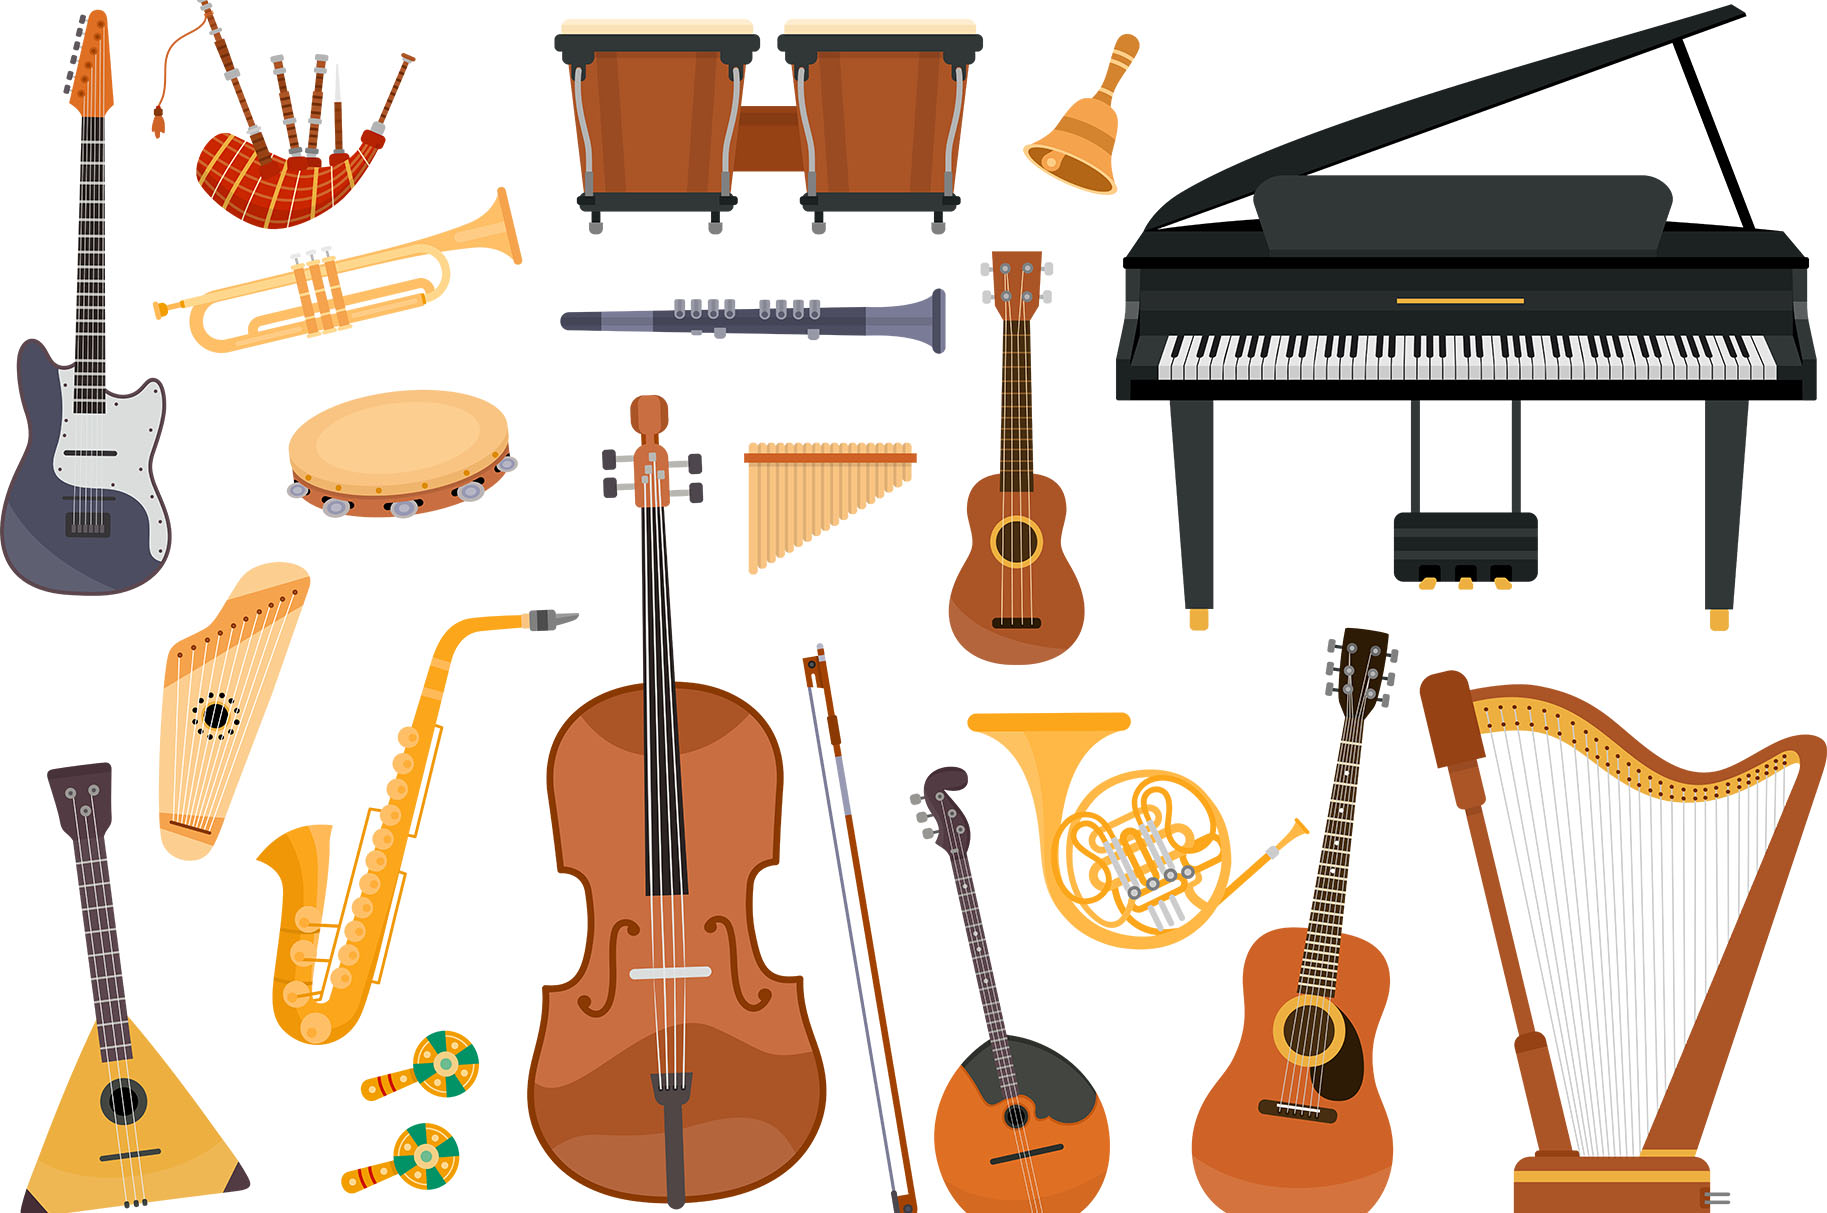 Choose an Instrument